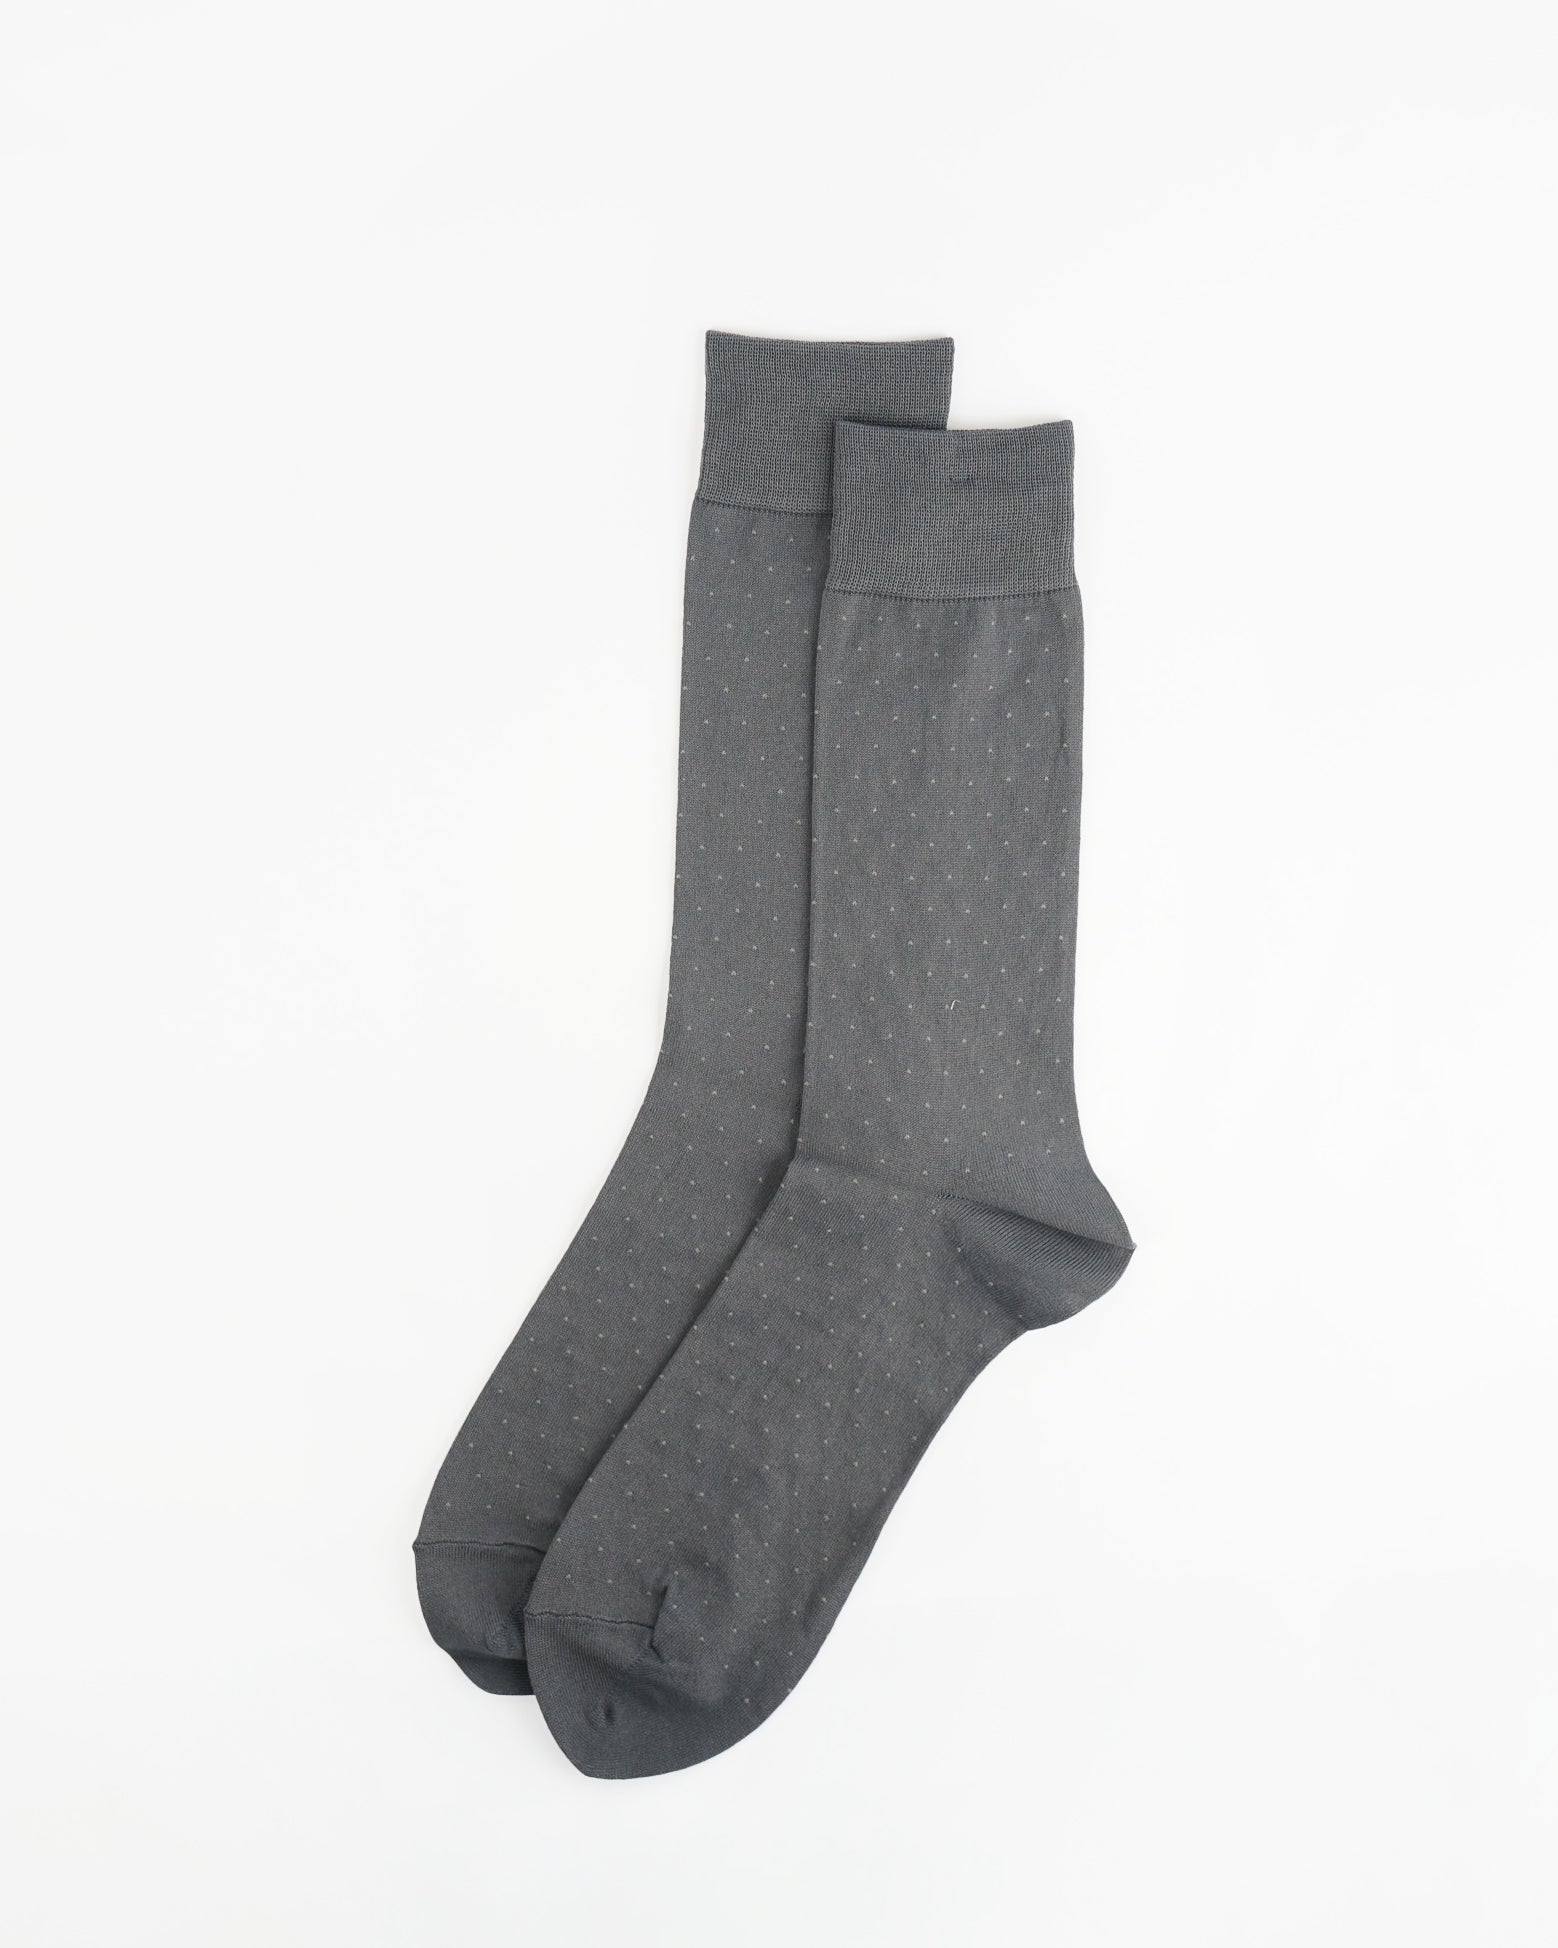 Polka Dot Socks/ Gray